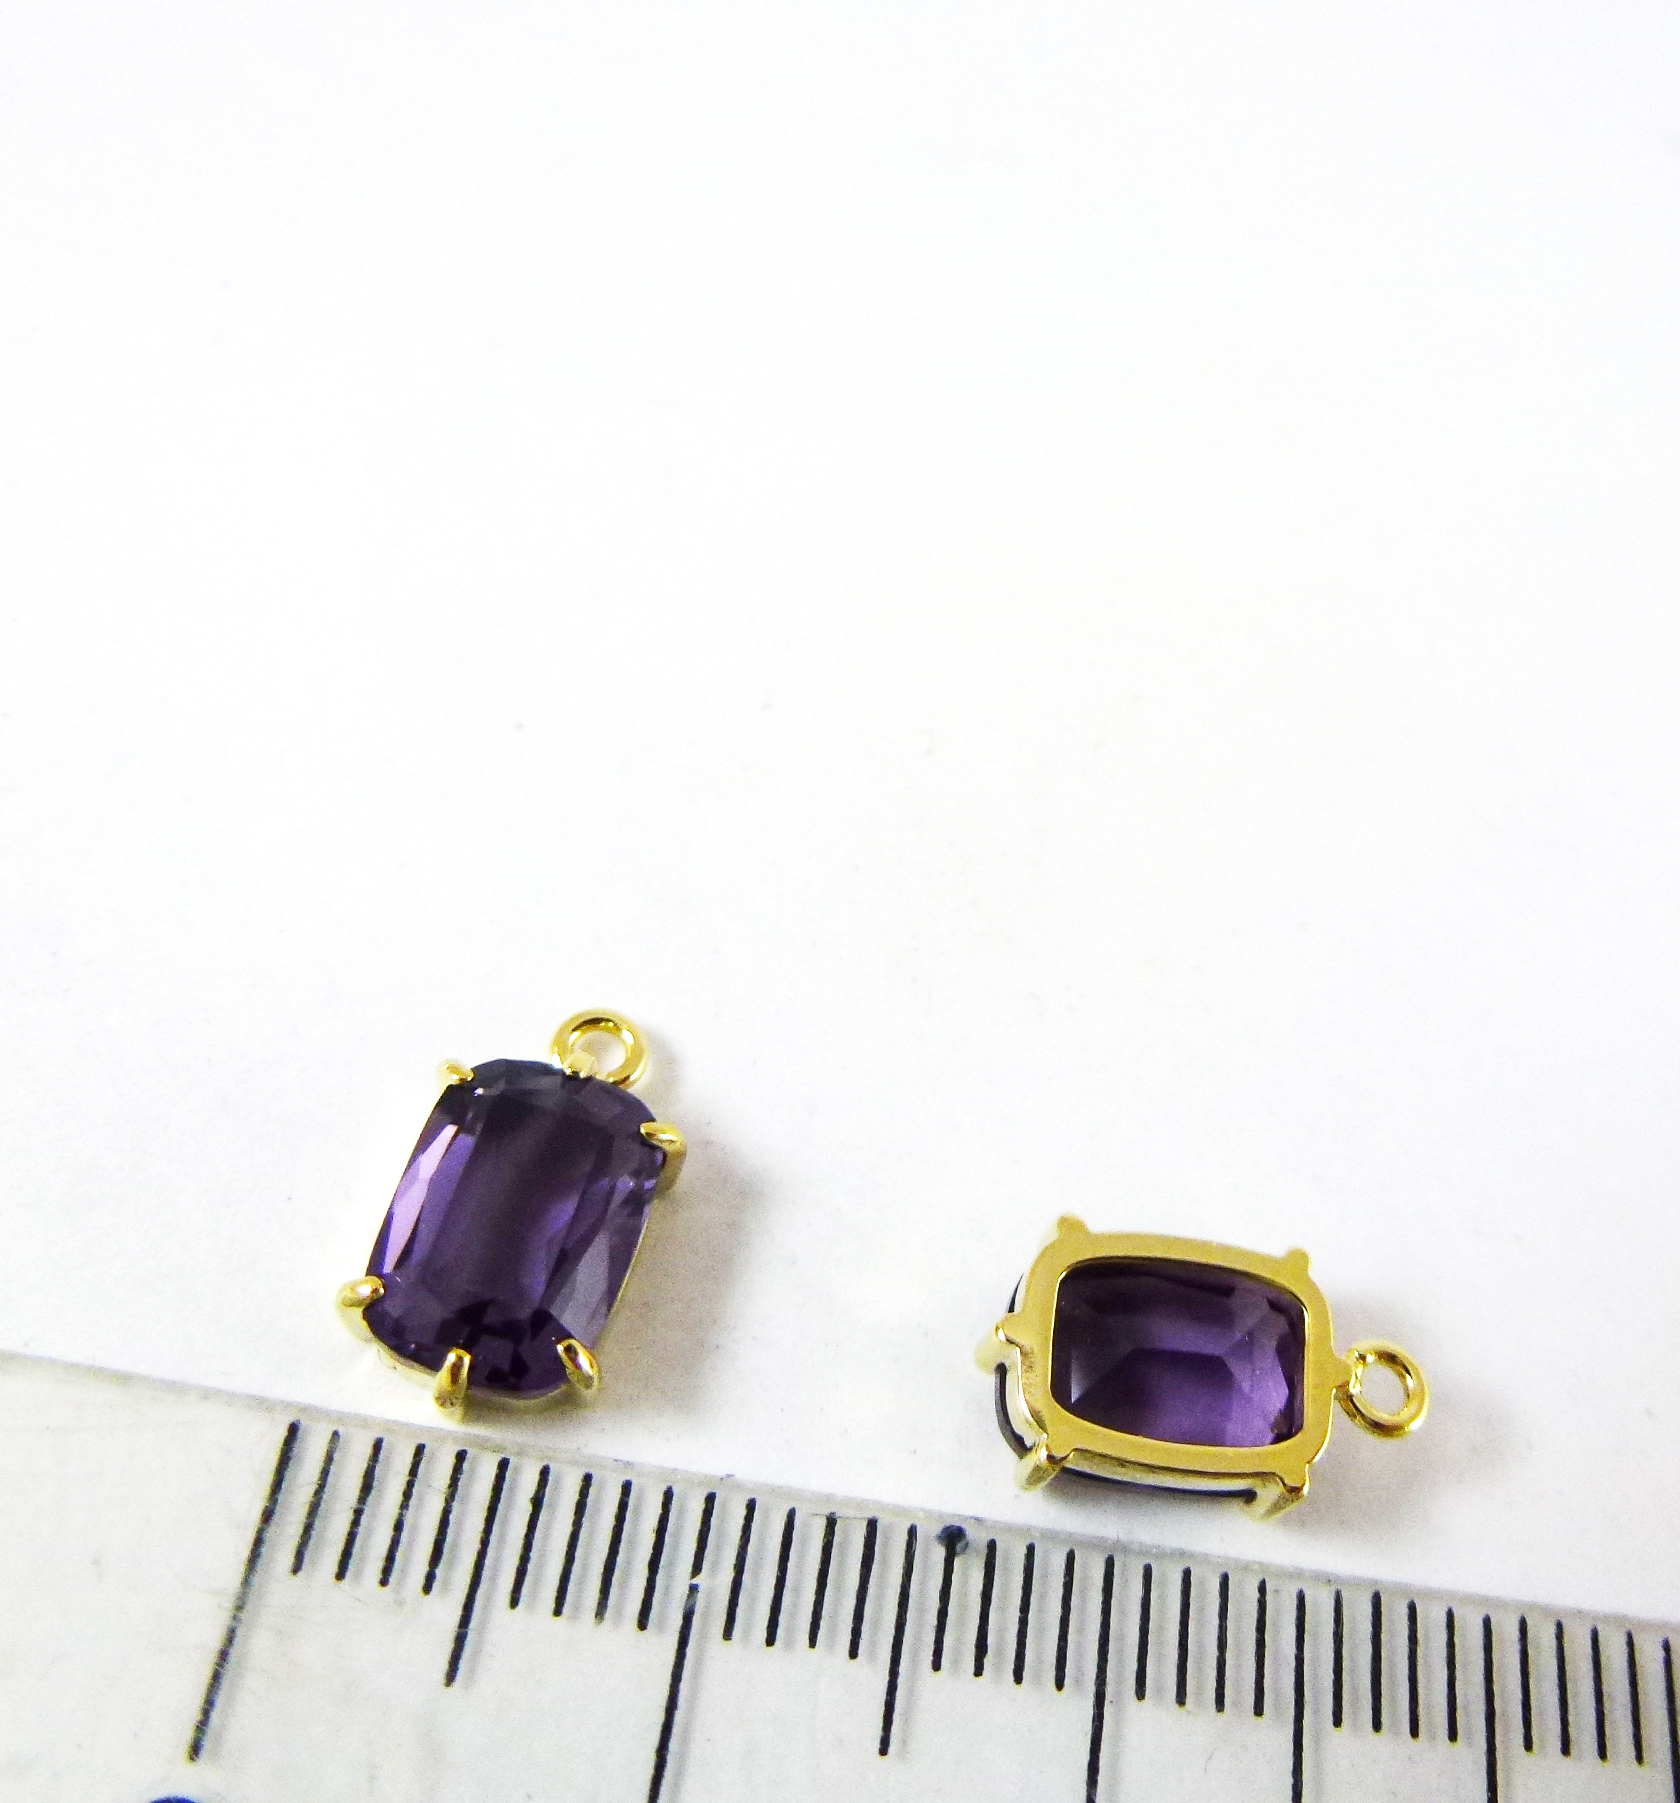 8x6mm銅鍍金色單孔方形包邊-深紫